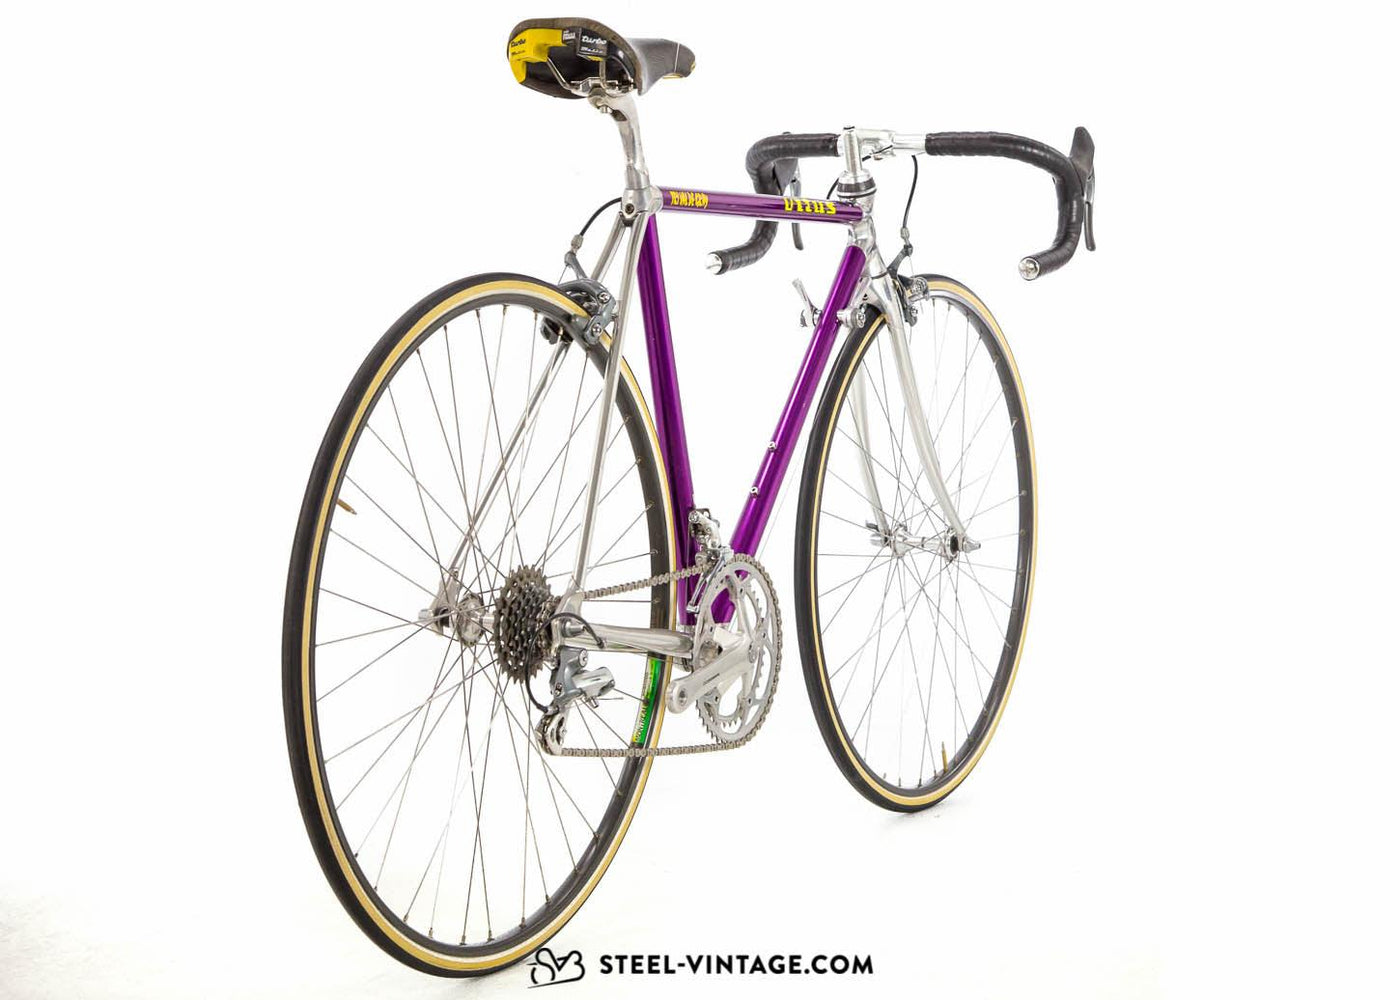 Vitus 992 Classic Road Bike Early 1990s - Steel Vintage Bikes